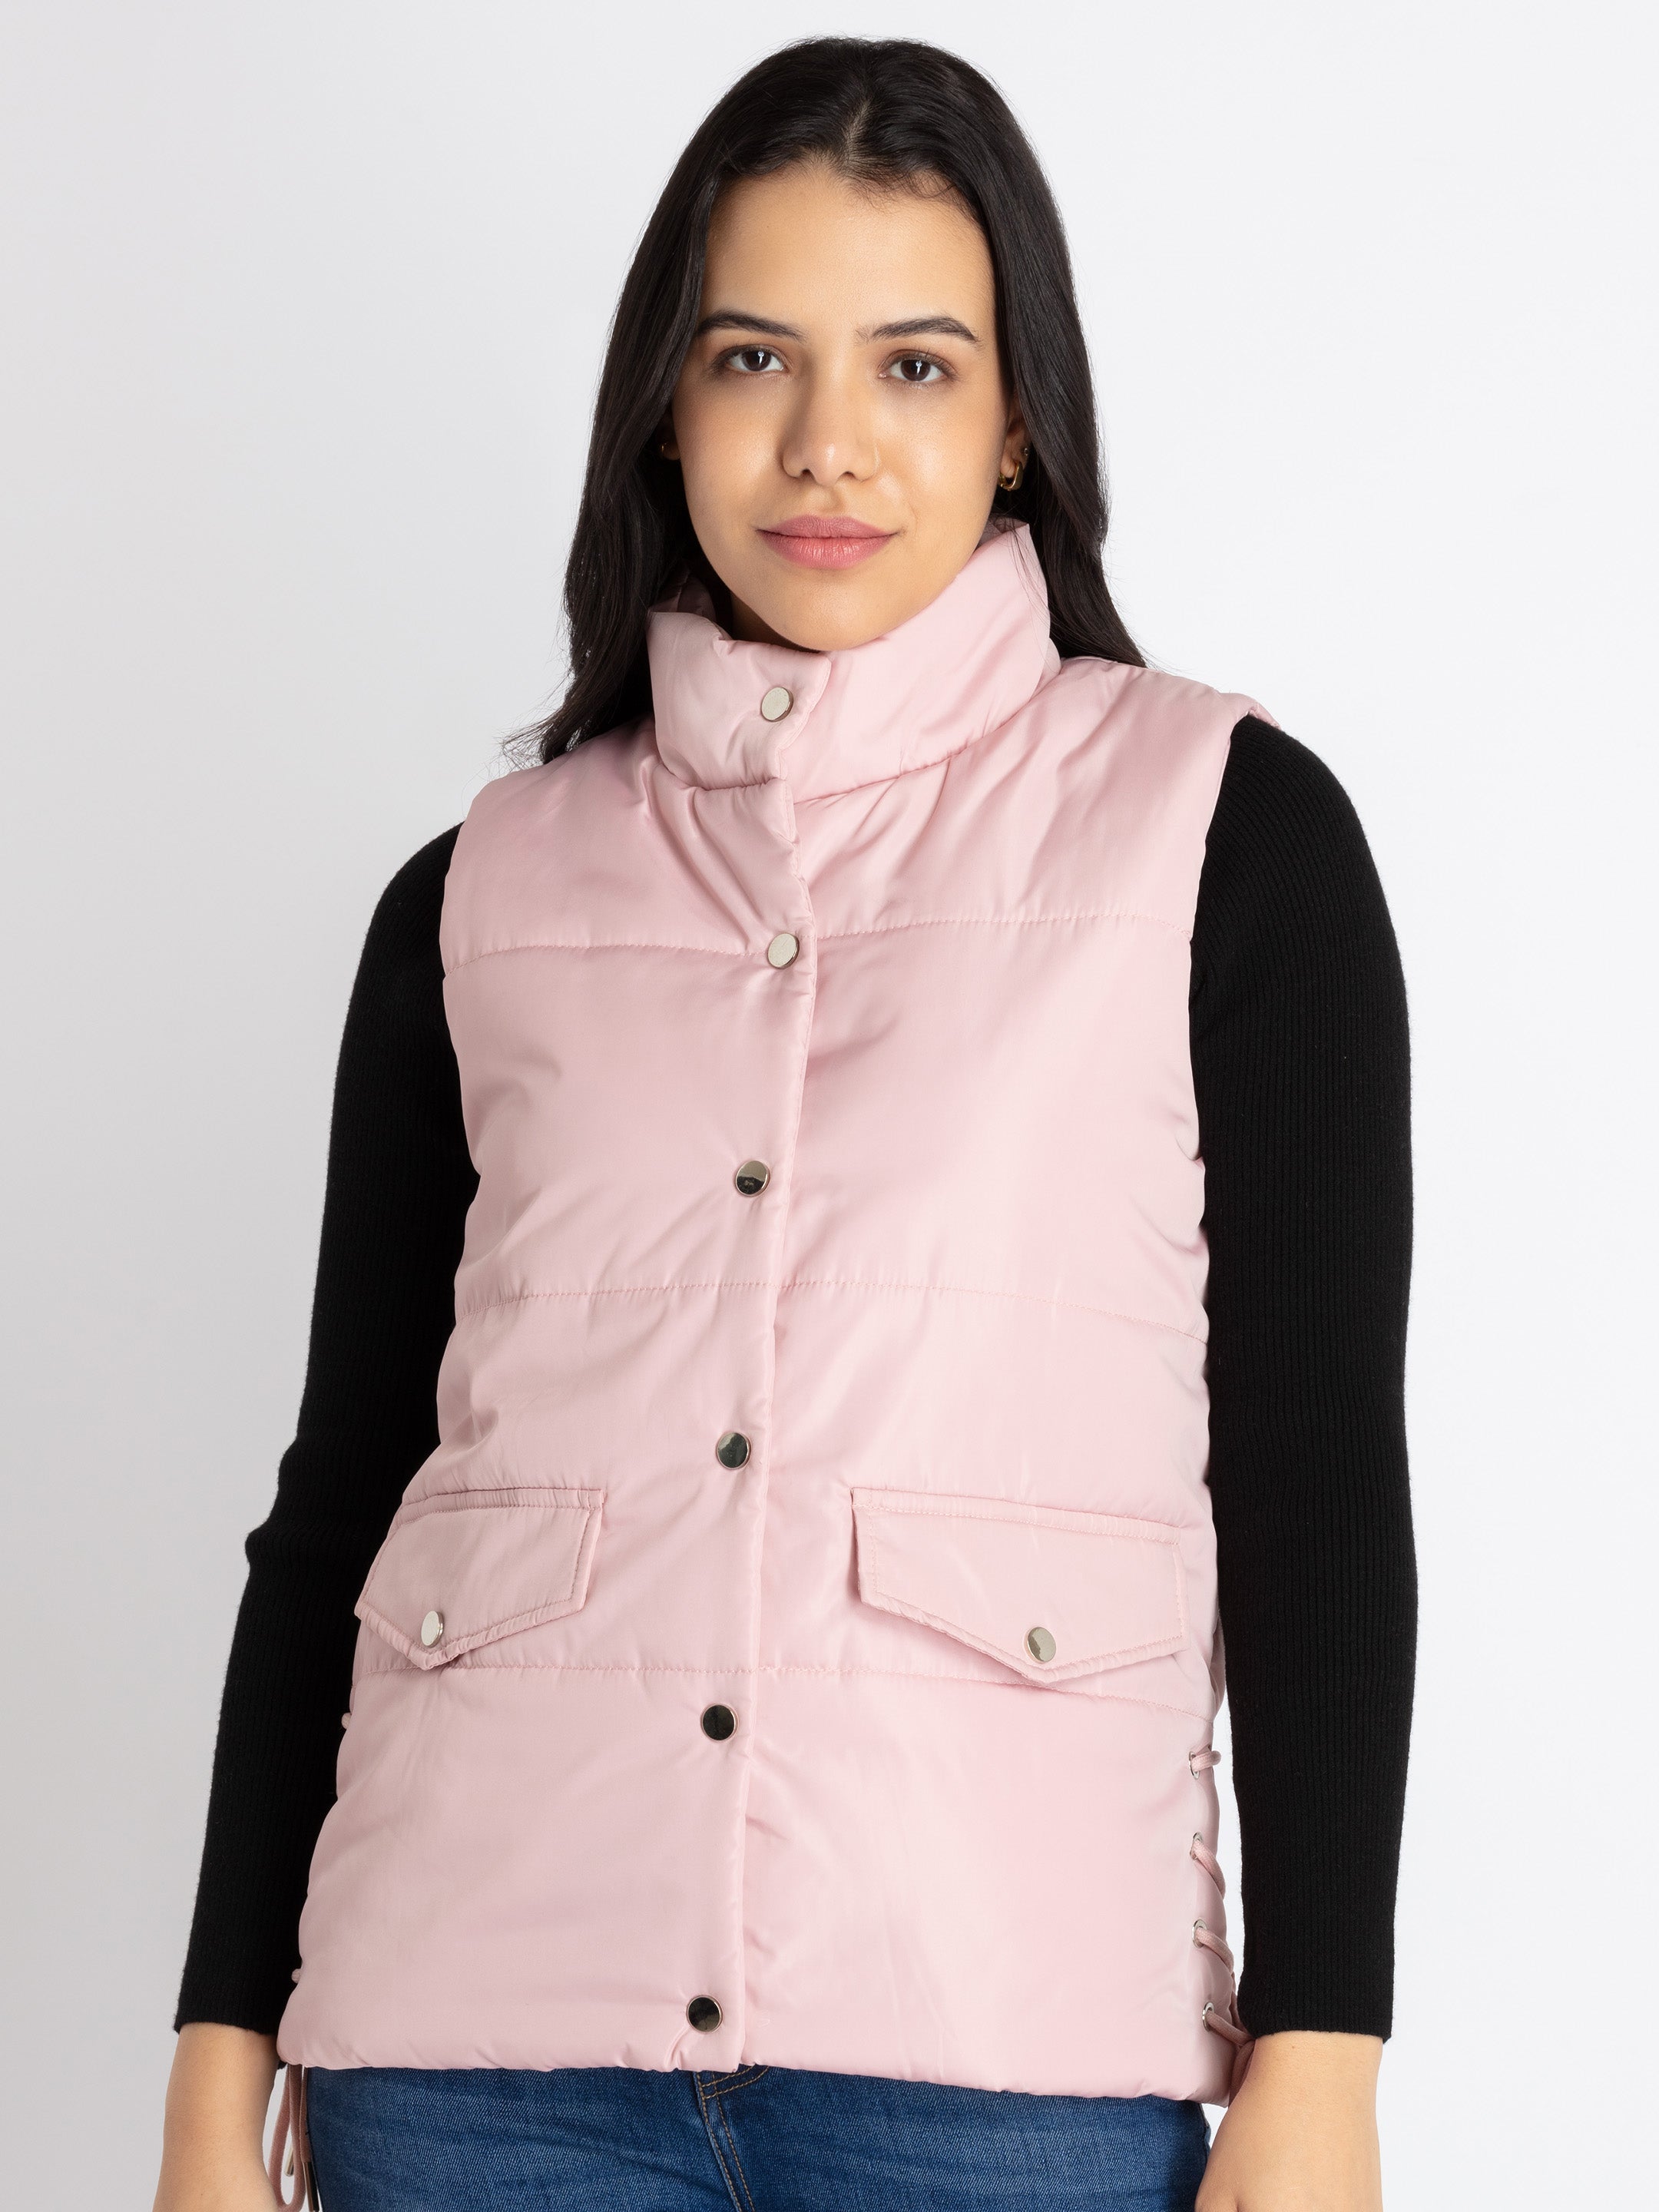 sleeveless jacket for women